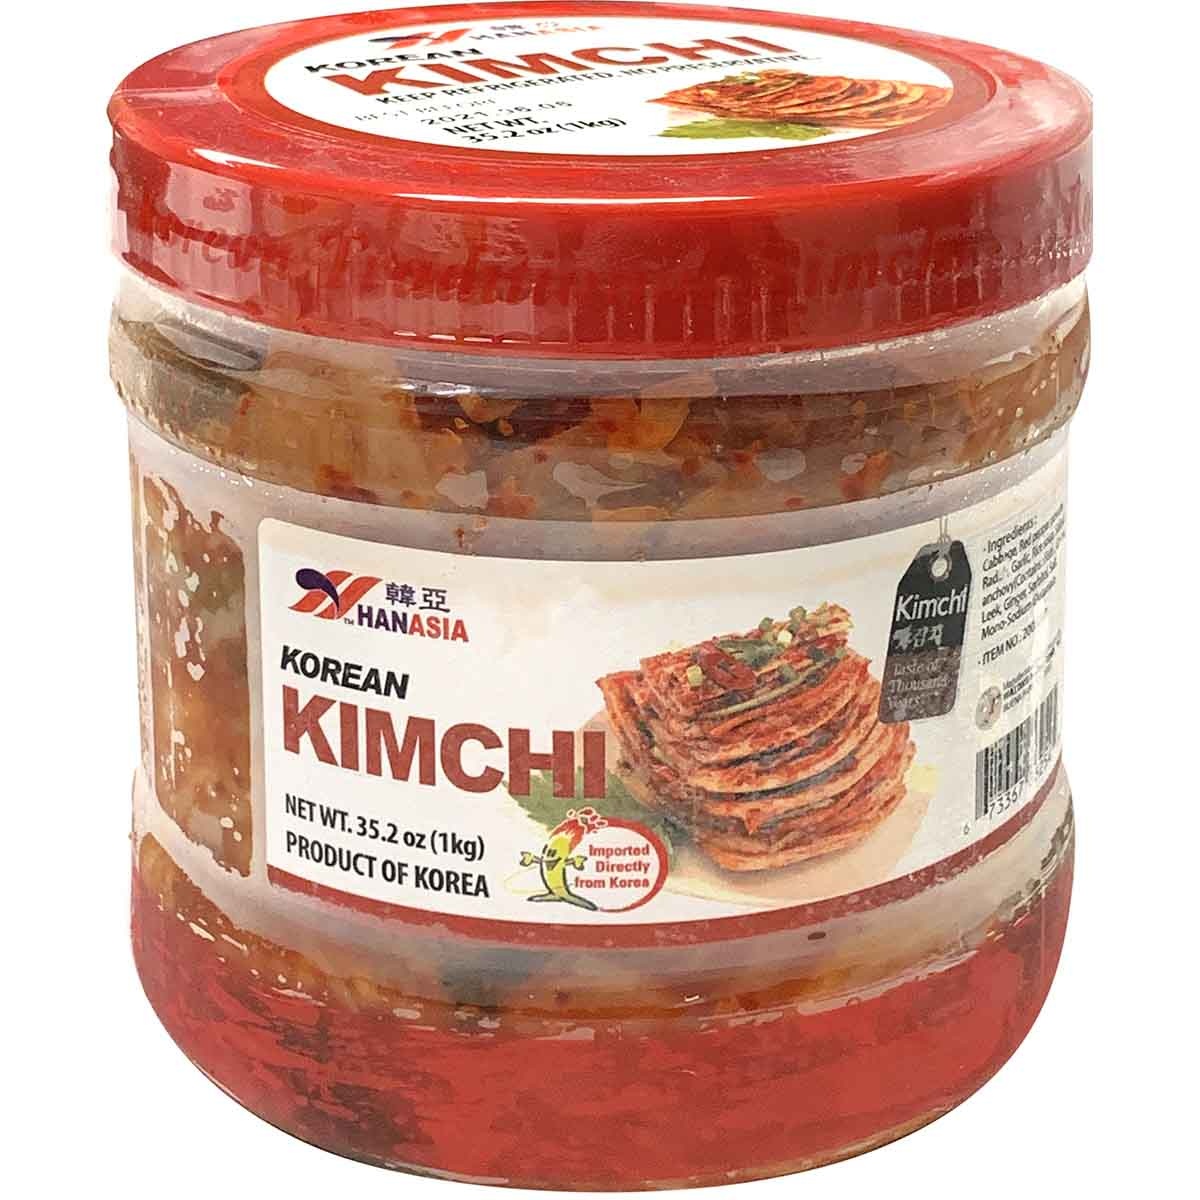 slide 1 of 1, Hanasia Korean Kimchi, 35.2 oz